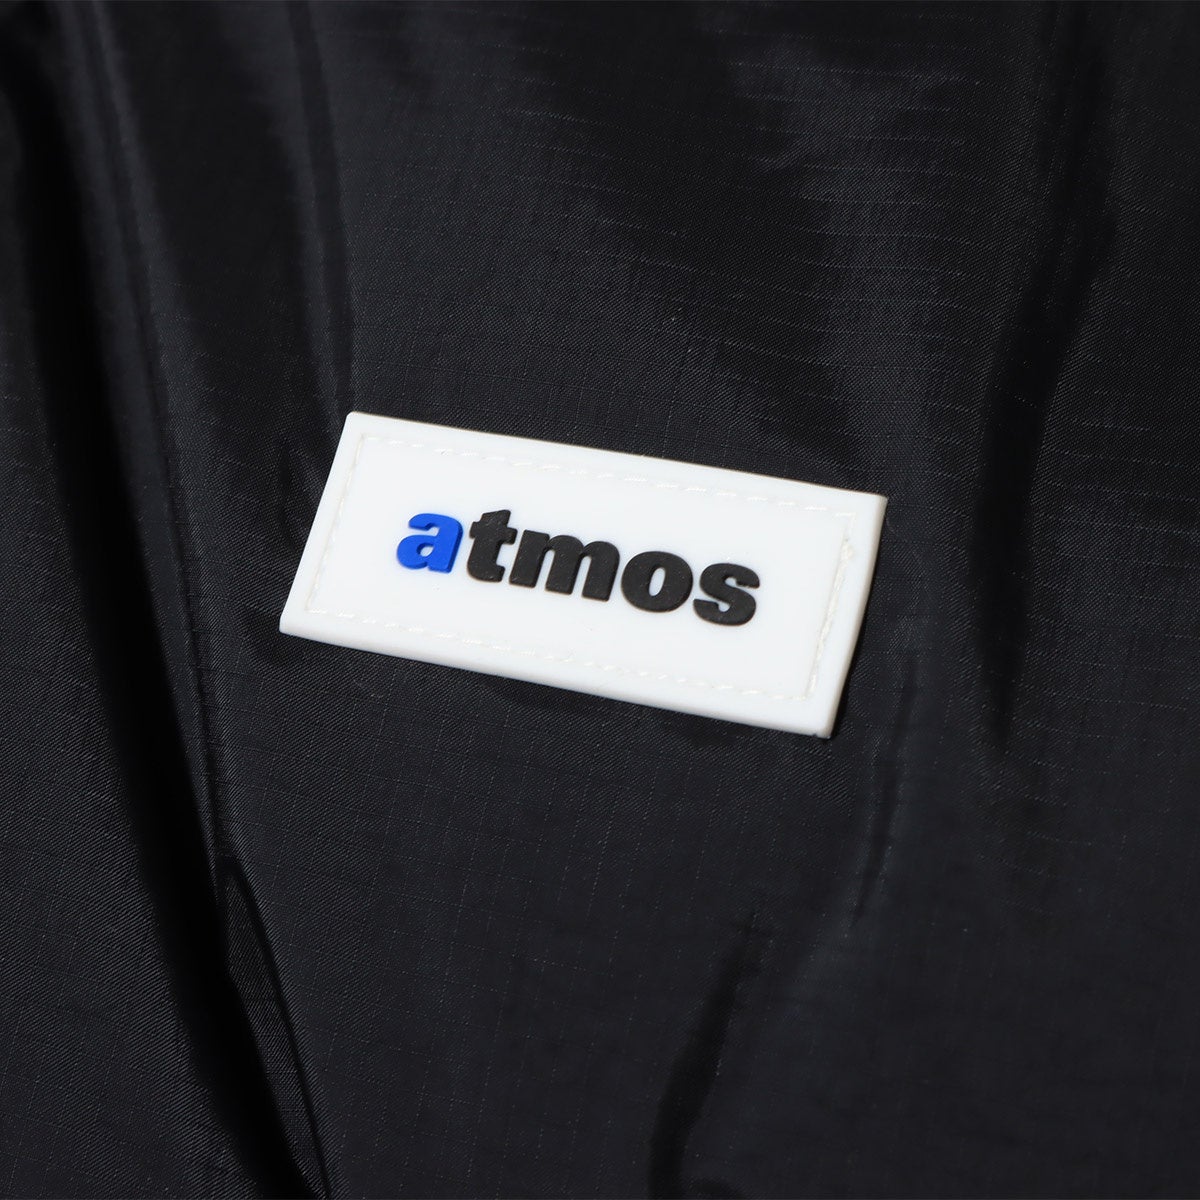 「atmos」と羽毛の町から生まれたダウンメーカー「NANGA」による初のコラボデレーションアイテムが登場。のサブ画像13